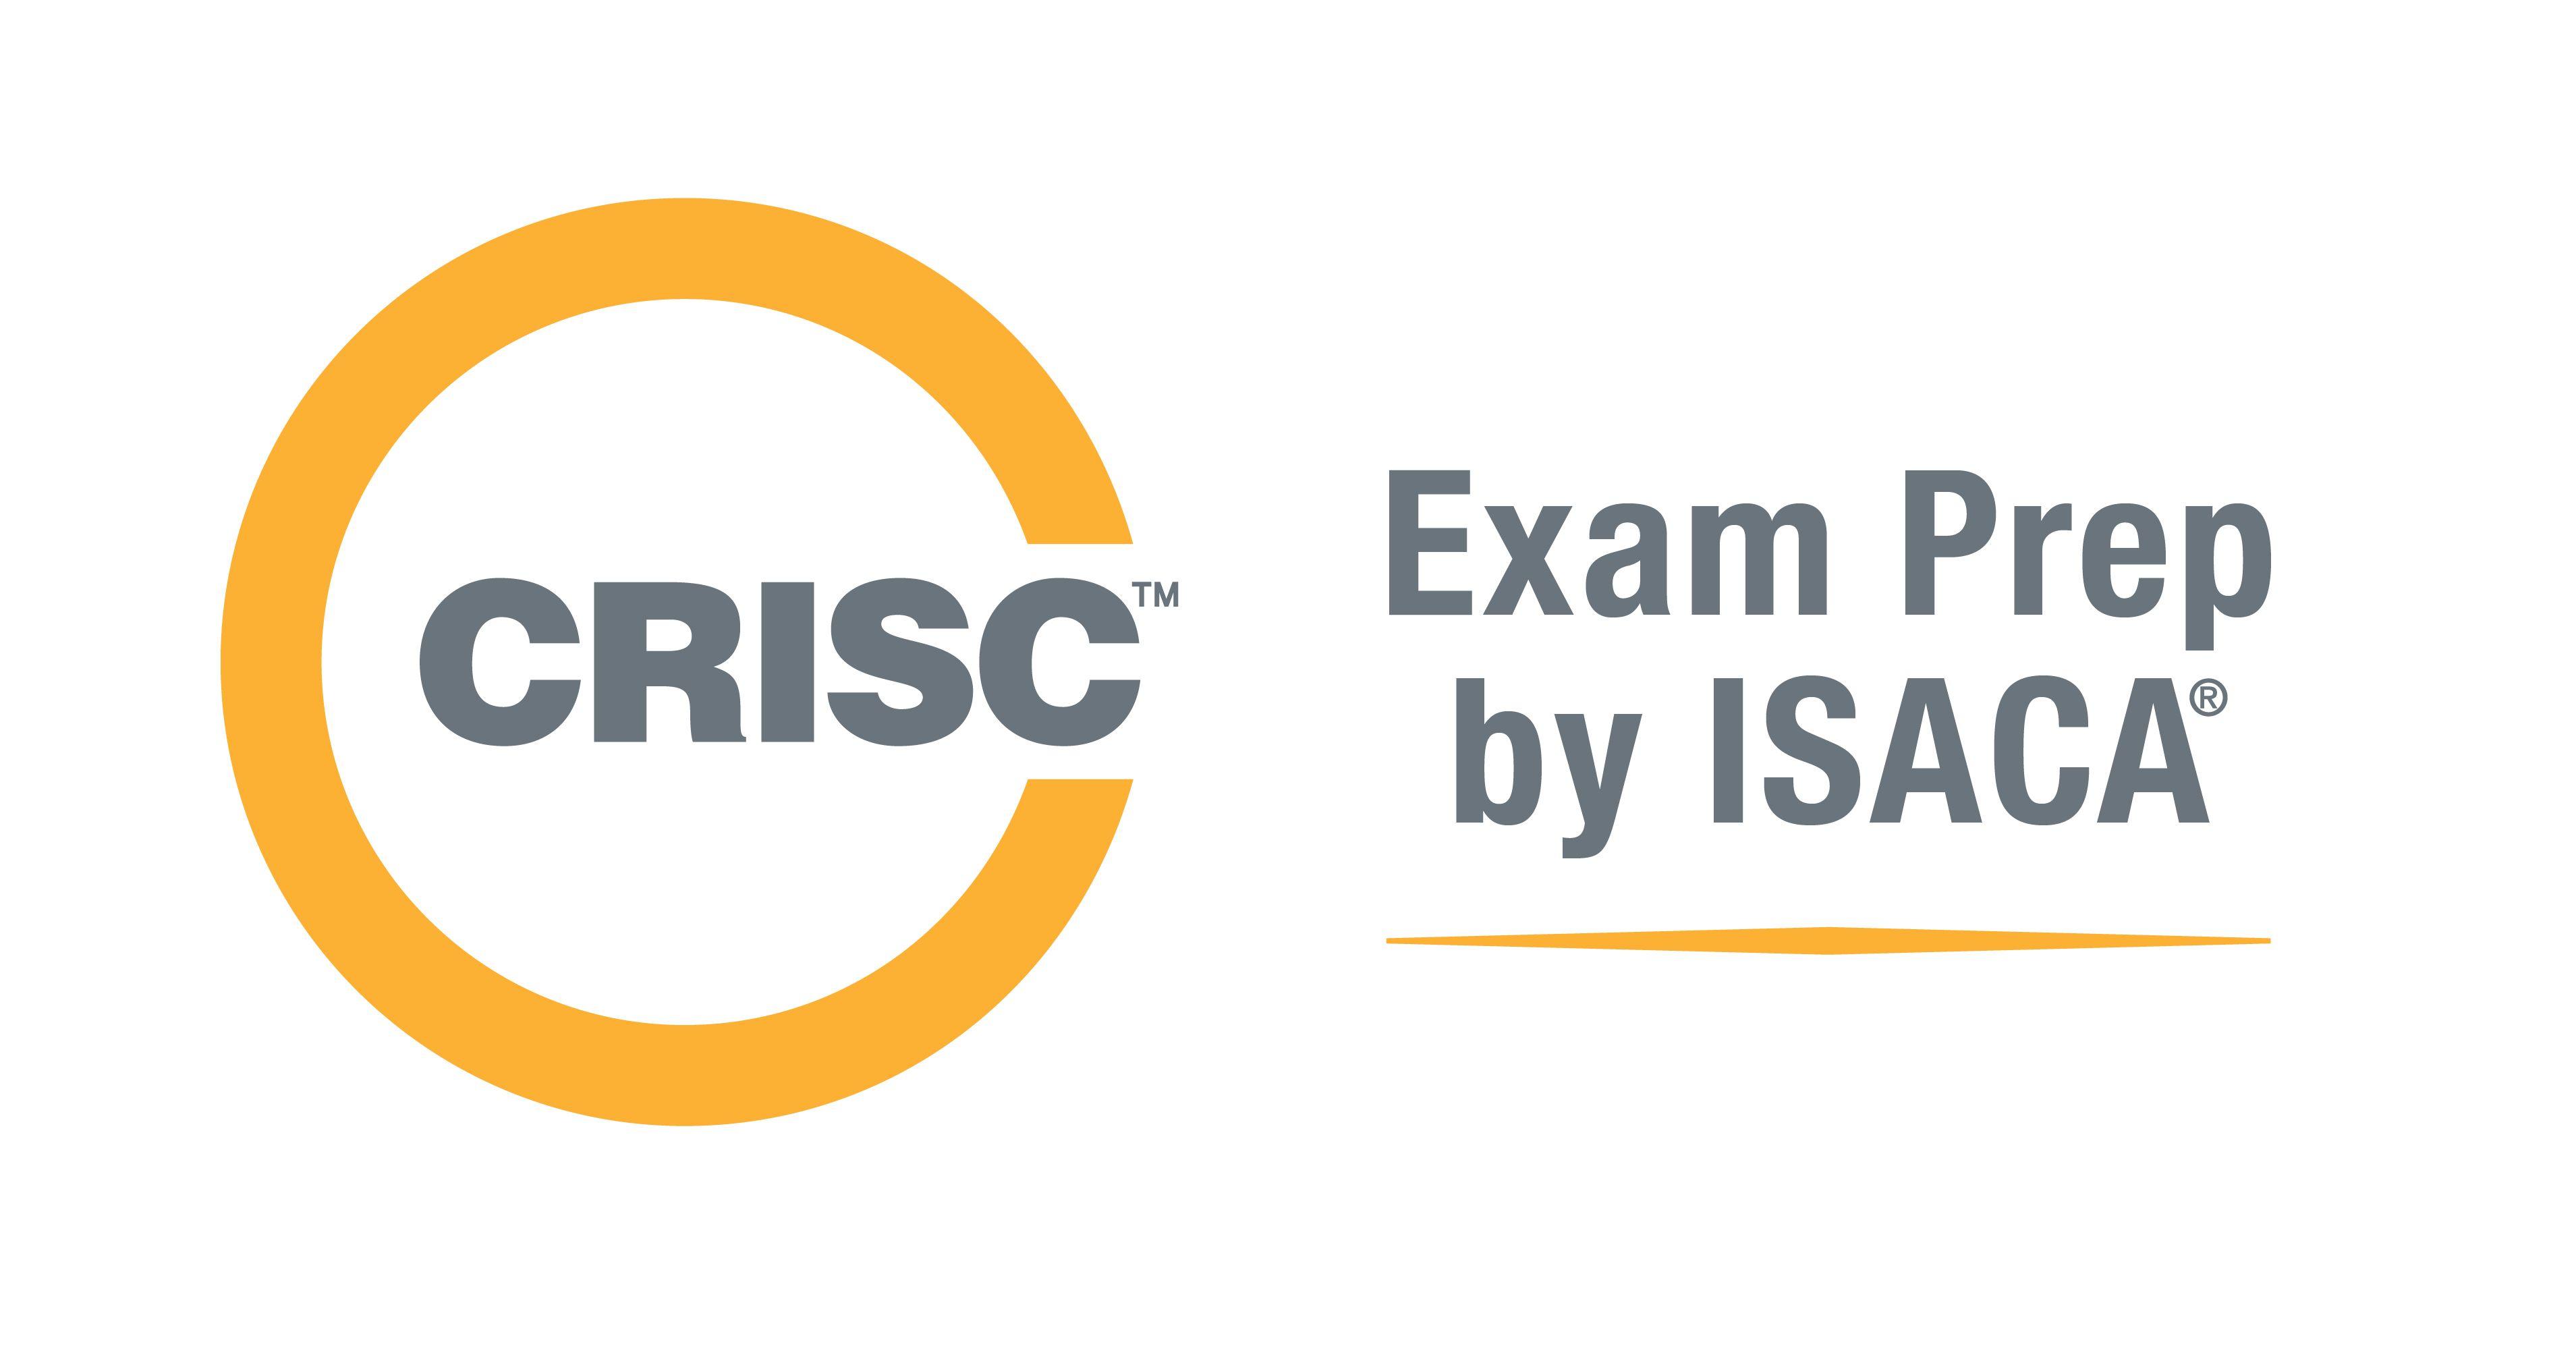 CRISC Logo - CRISC Exam Prep